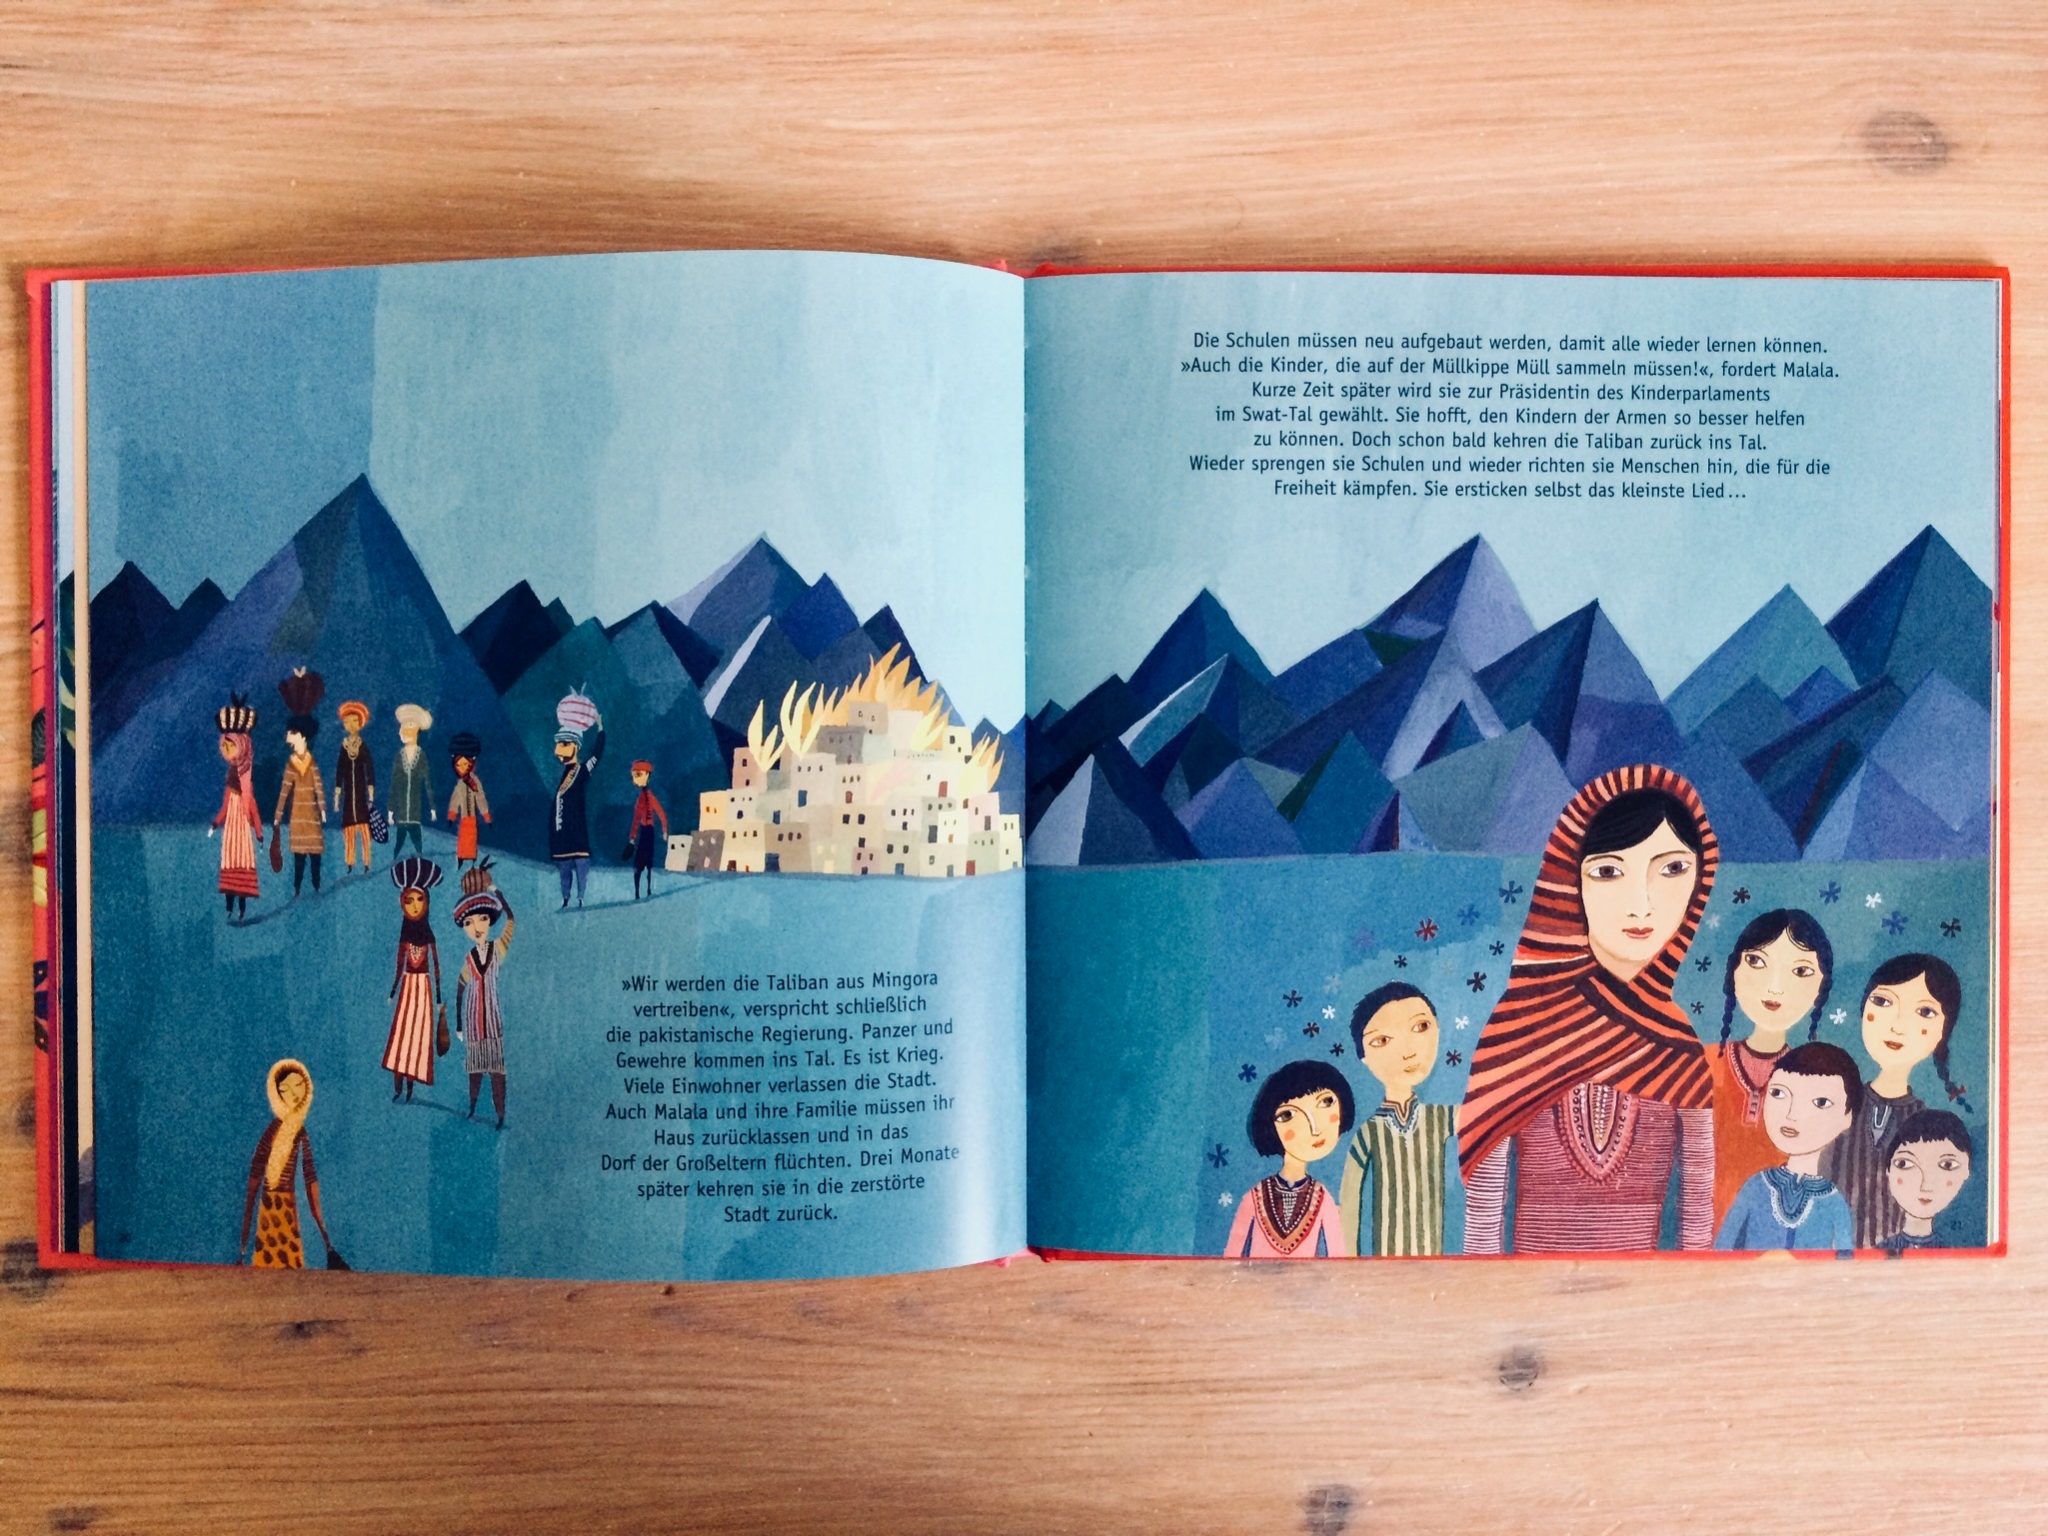 Gutes zu Weihnachten – Kinderbücher zum Nachdenken über die Welt